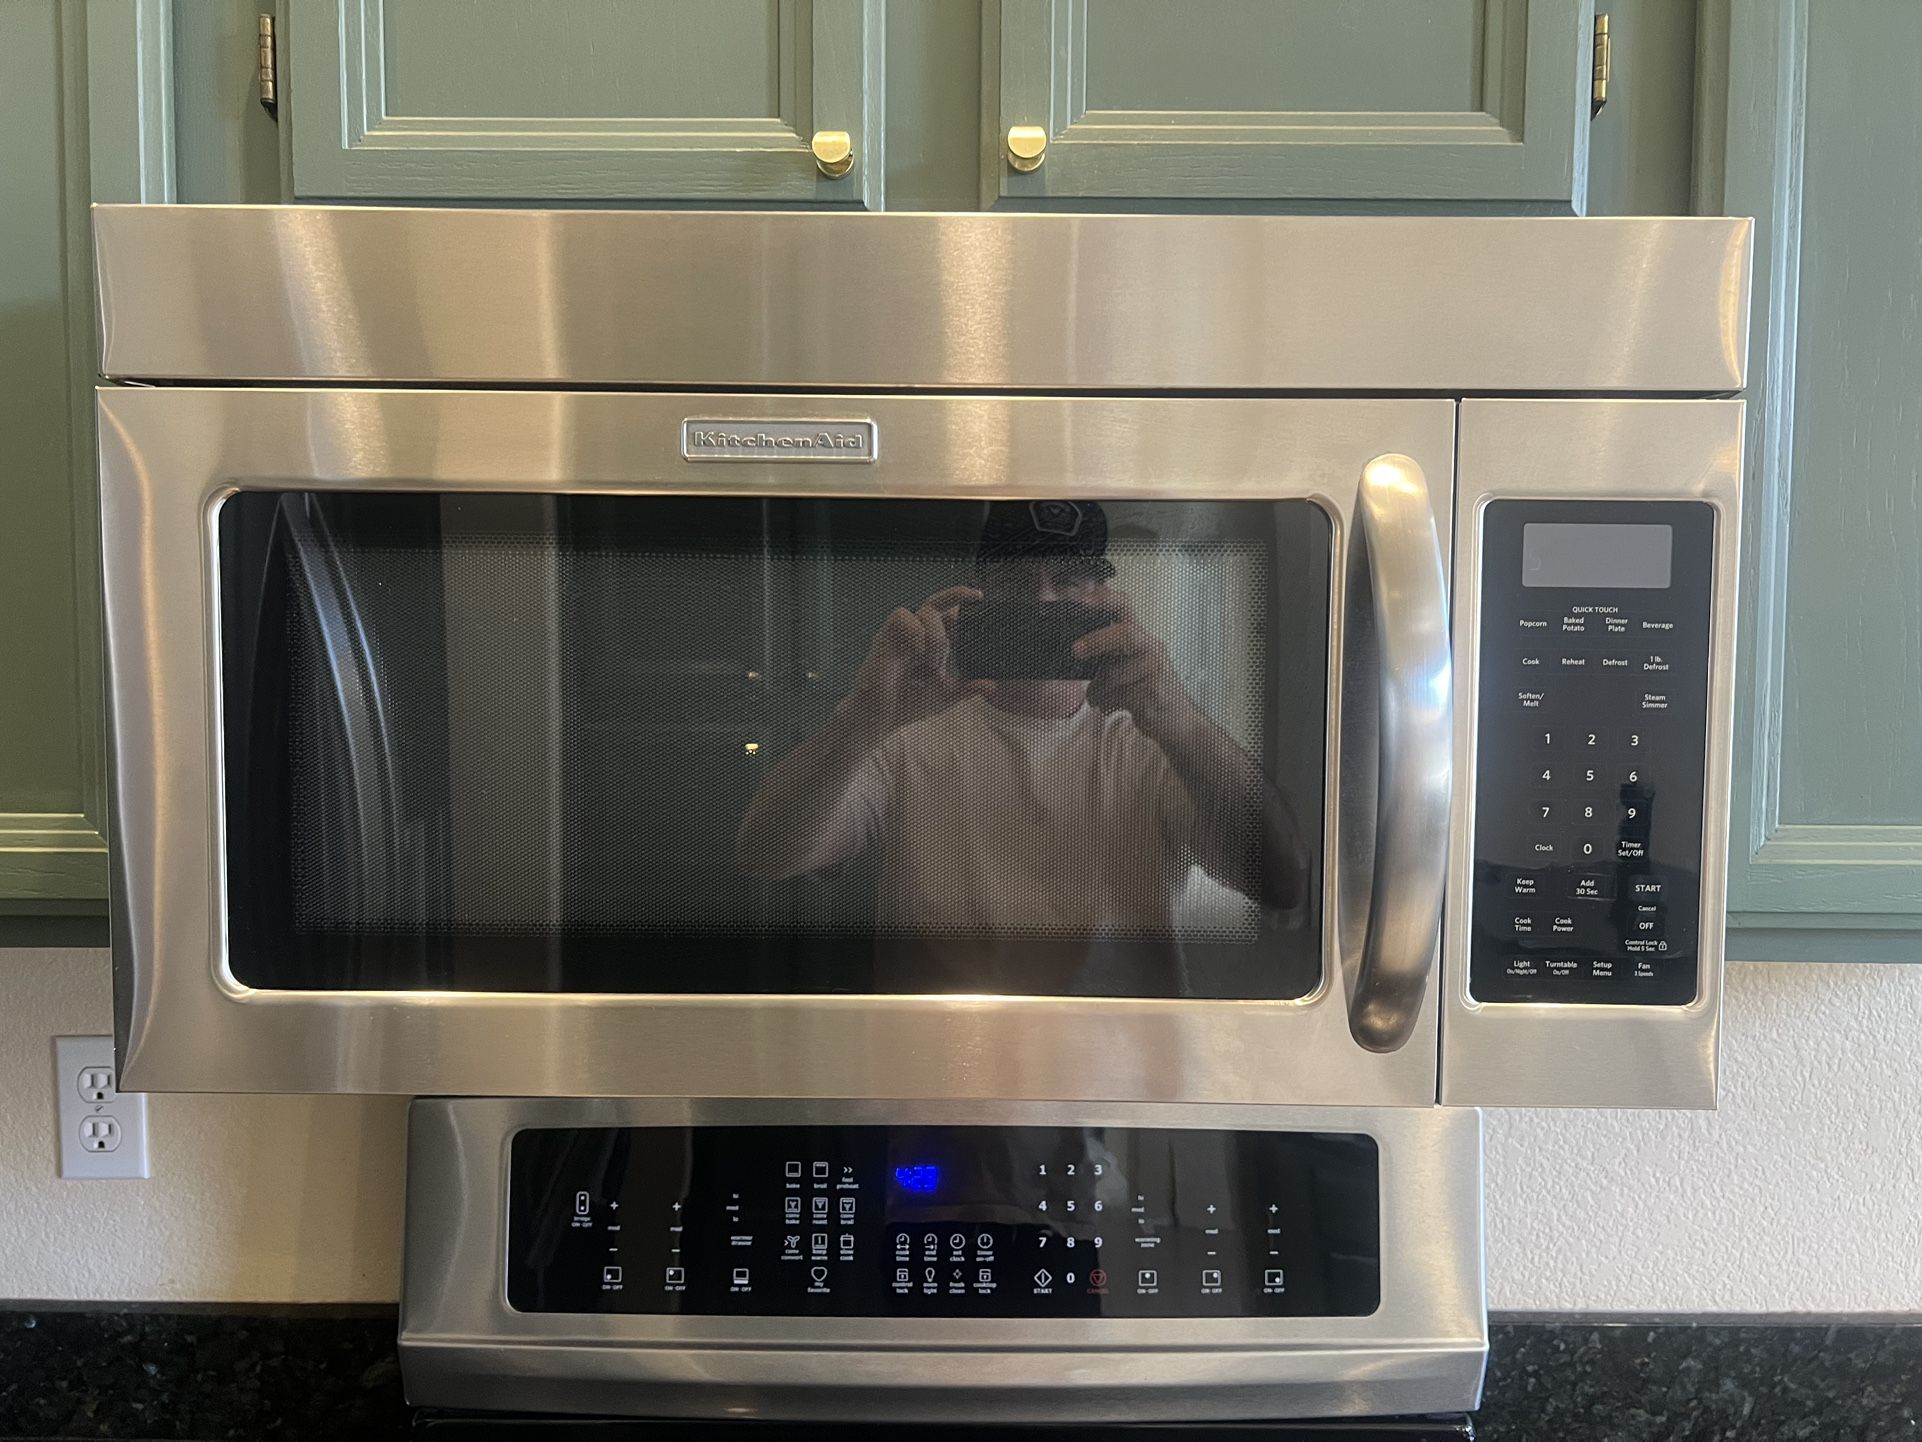 Kitchenaid Under Cabinet Microwave 